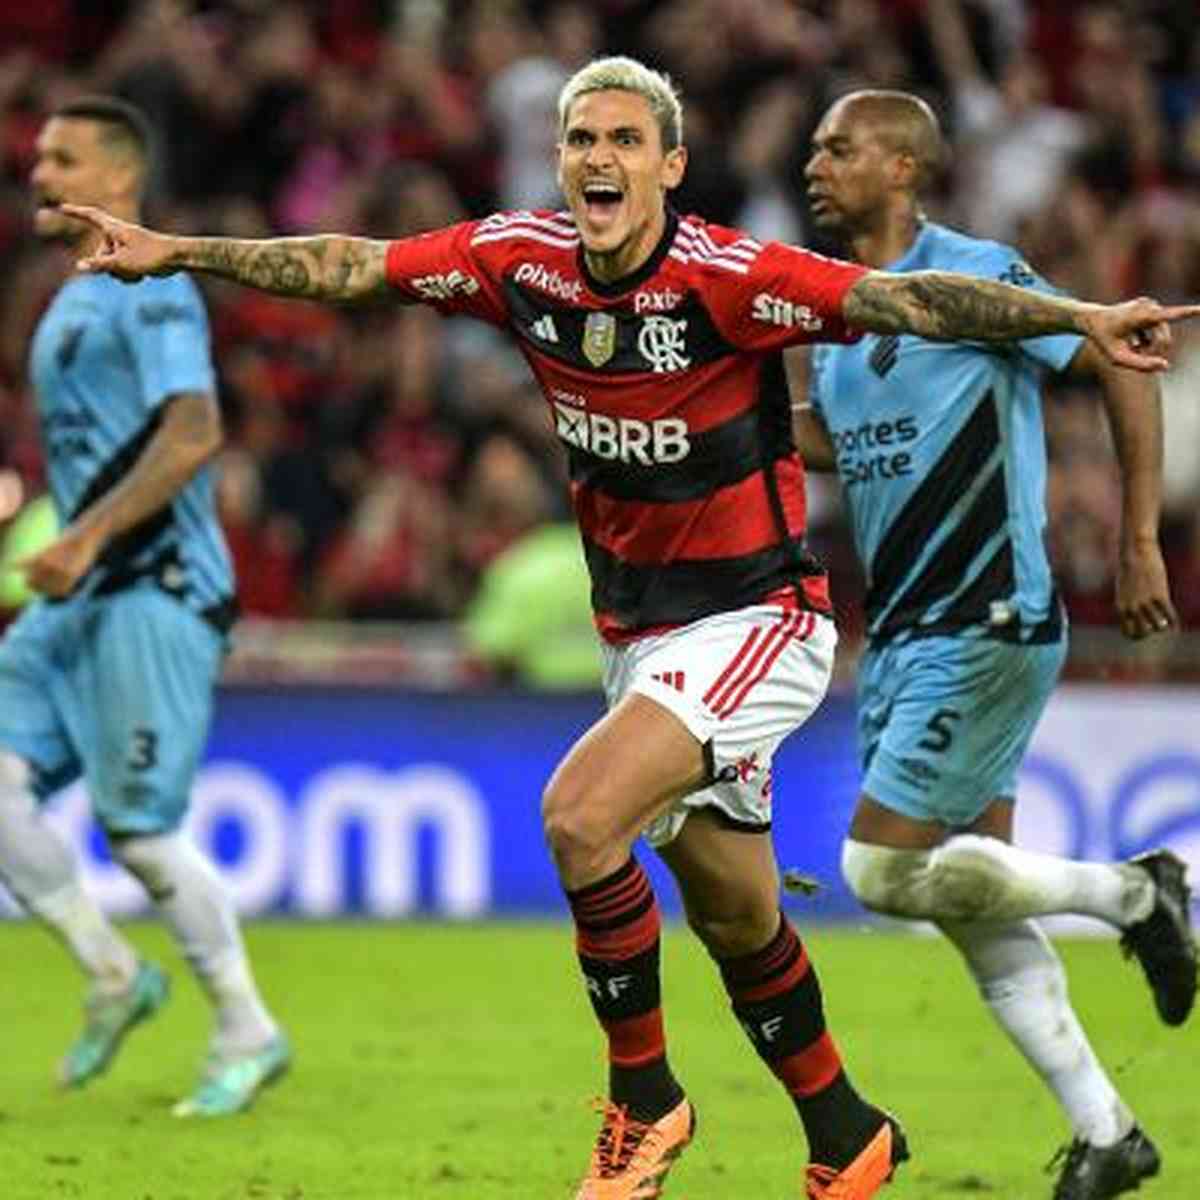 Flamengo 2 x 1 Athletico-PR: gols, melhores momentos e ficha do